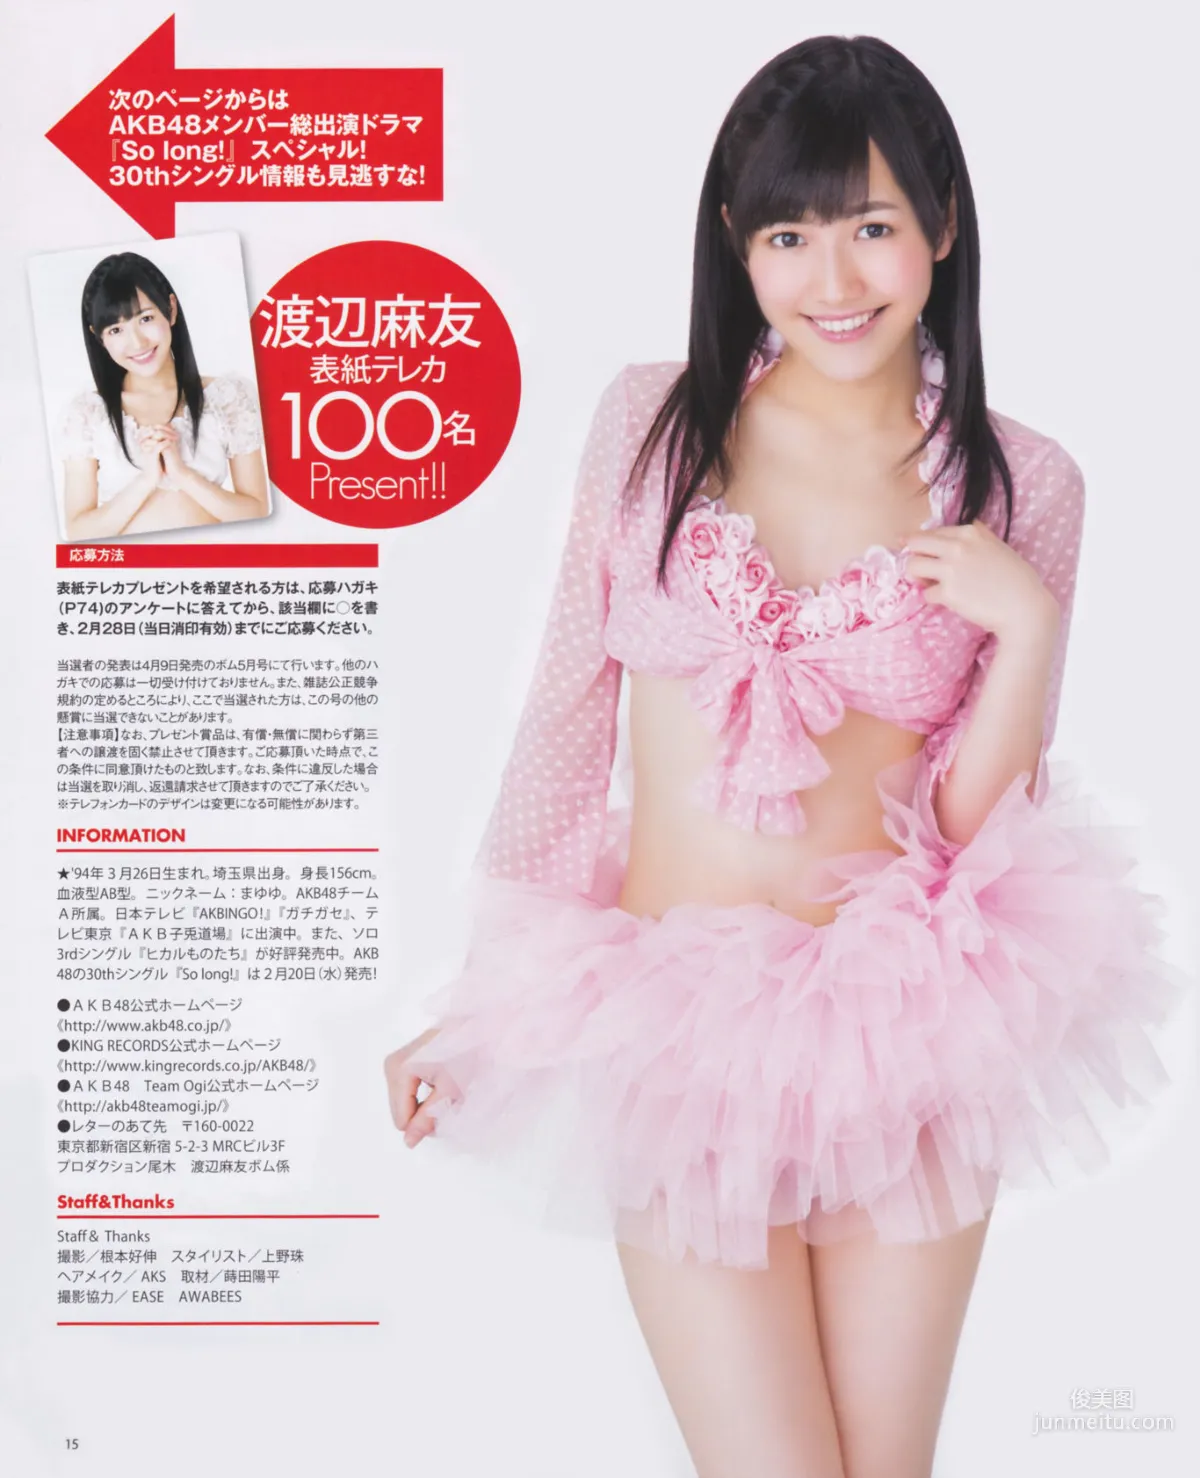 [Bomb Magazine] 2013年No.03 渡边麻友 秋元才加 AKB48 写真杂志17